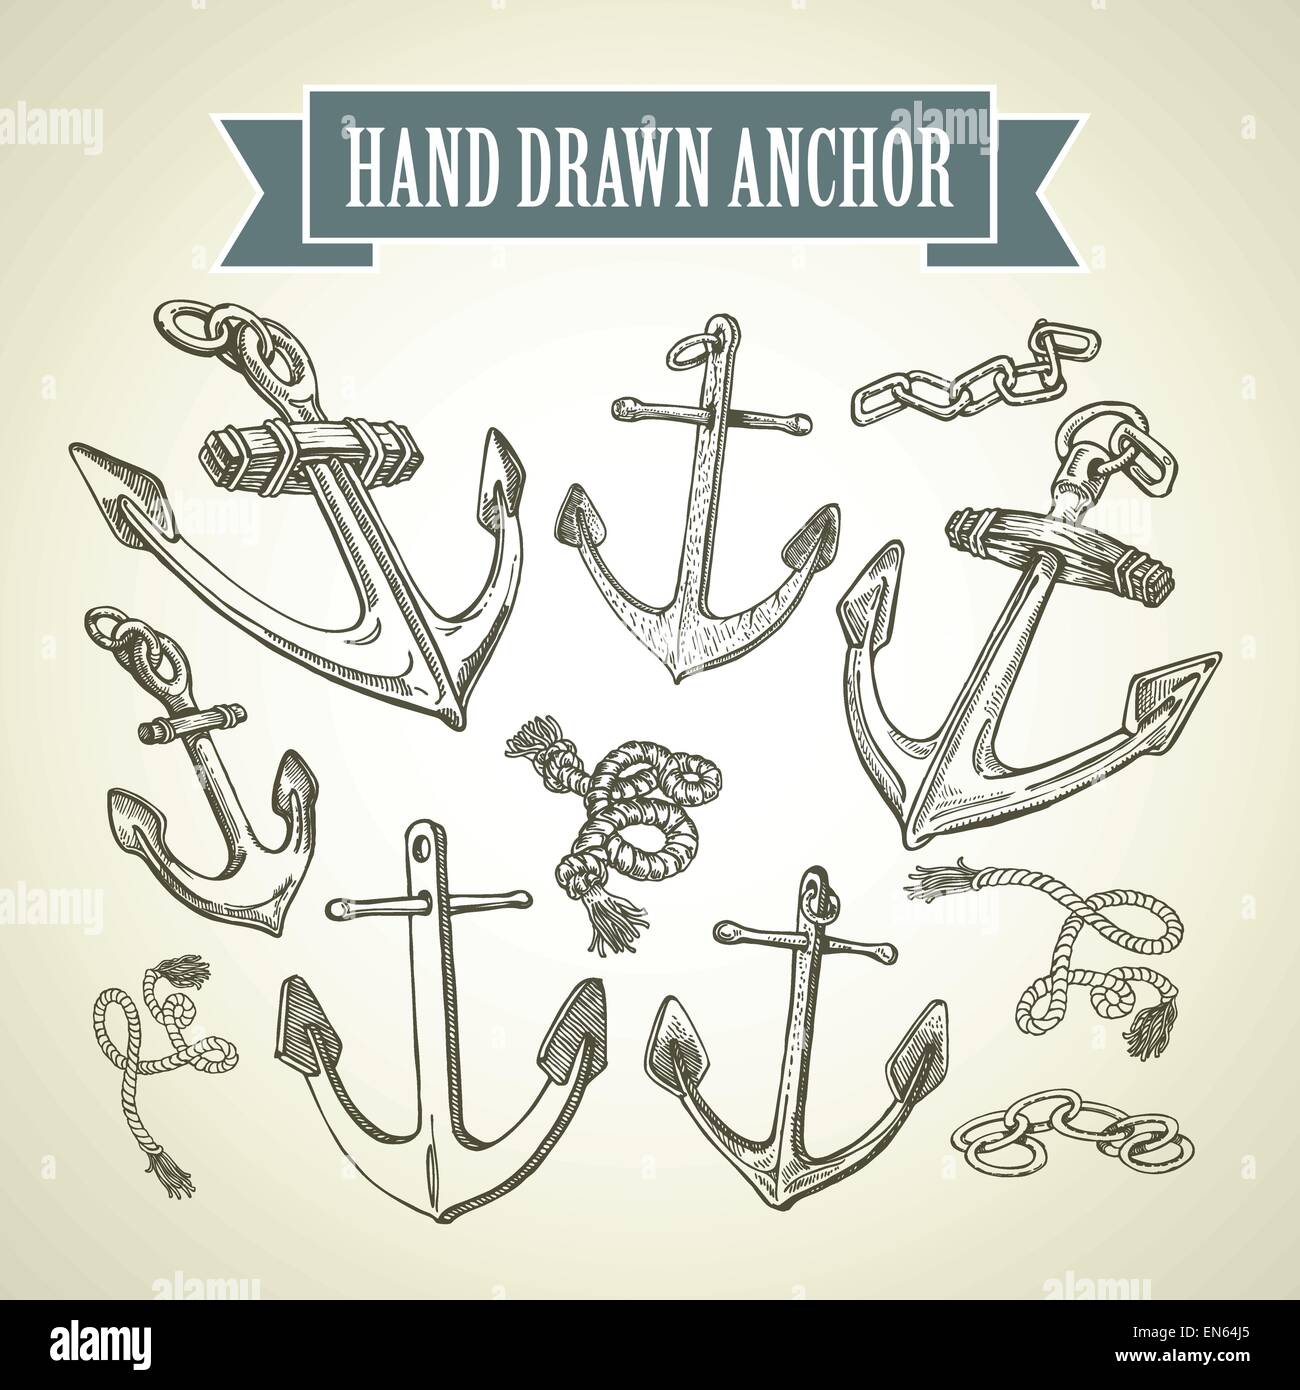 Bozzetto disegnato a mano di ancoraggio. Serie di illustrazioni vettoriali Illustrazione Vettoriale